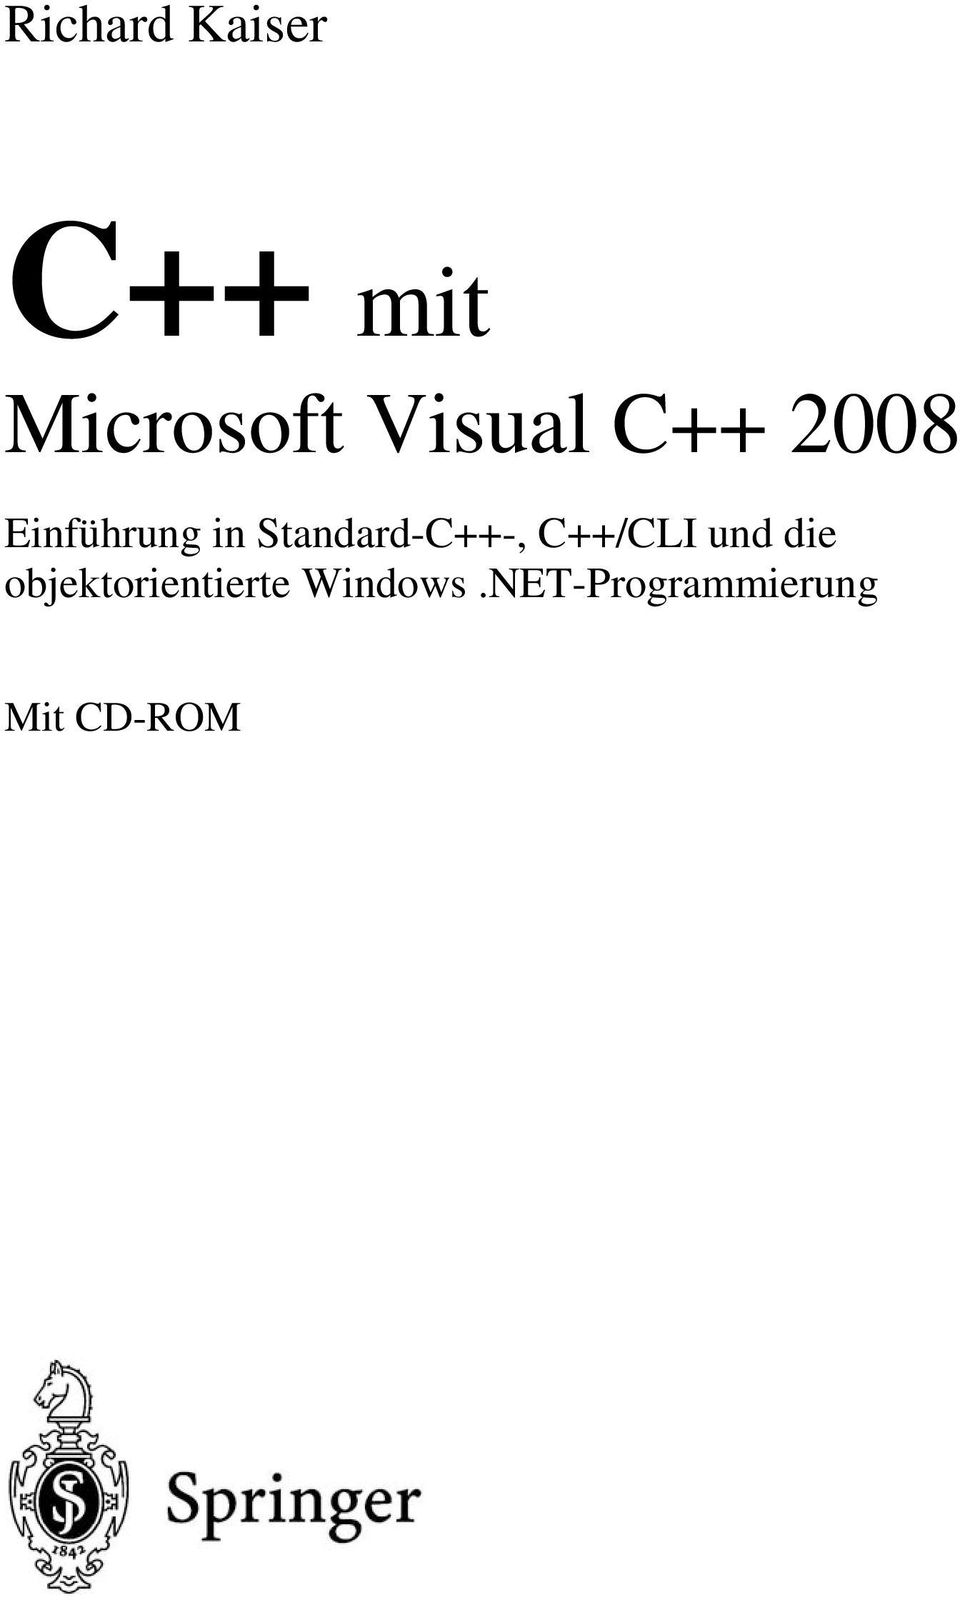 Standard-C++-, C++/CLI und die